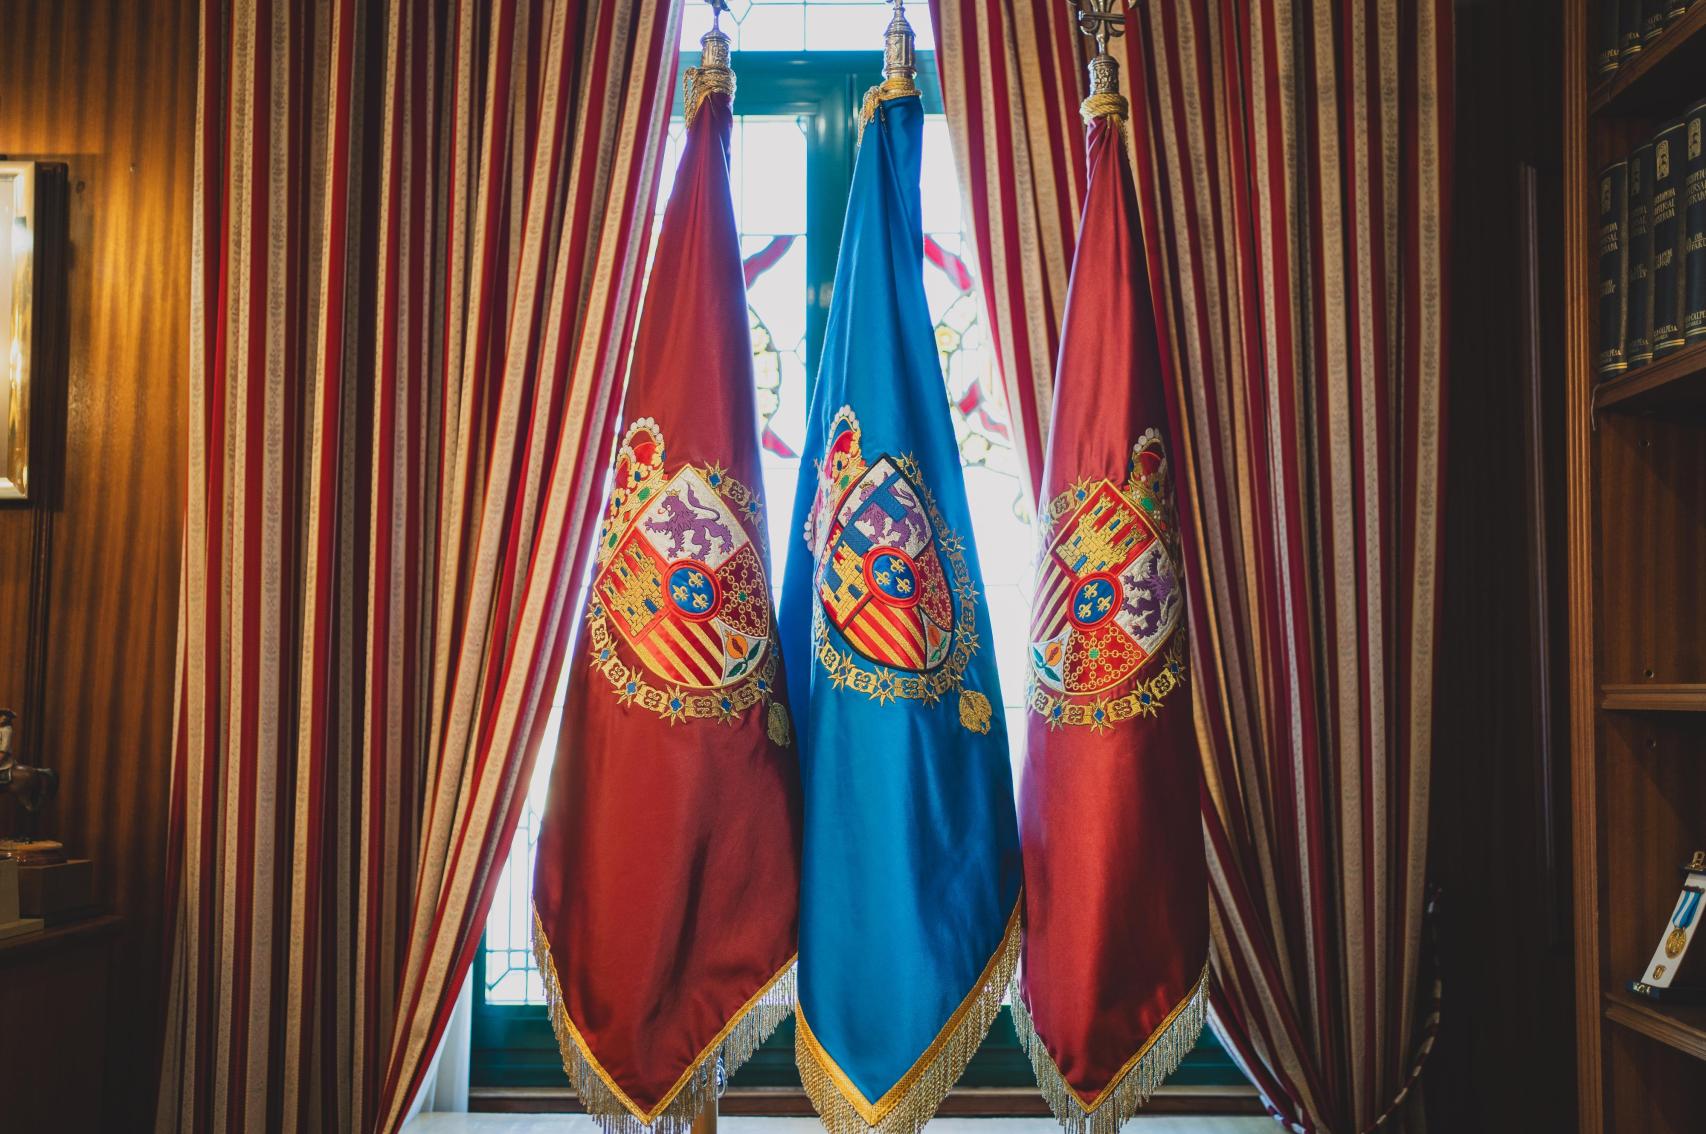 Detalle de las tres guías: las burdeos, con su escudo de armas del rey de España, representan a Felipe VI; el escudo heráldico azul con el lambel y la corona del principado asturiano es la de la princesa Leonor.